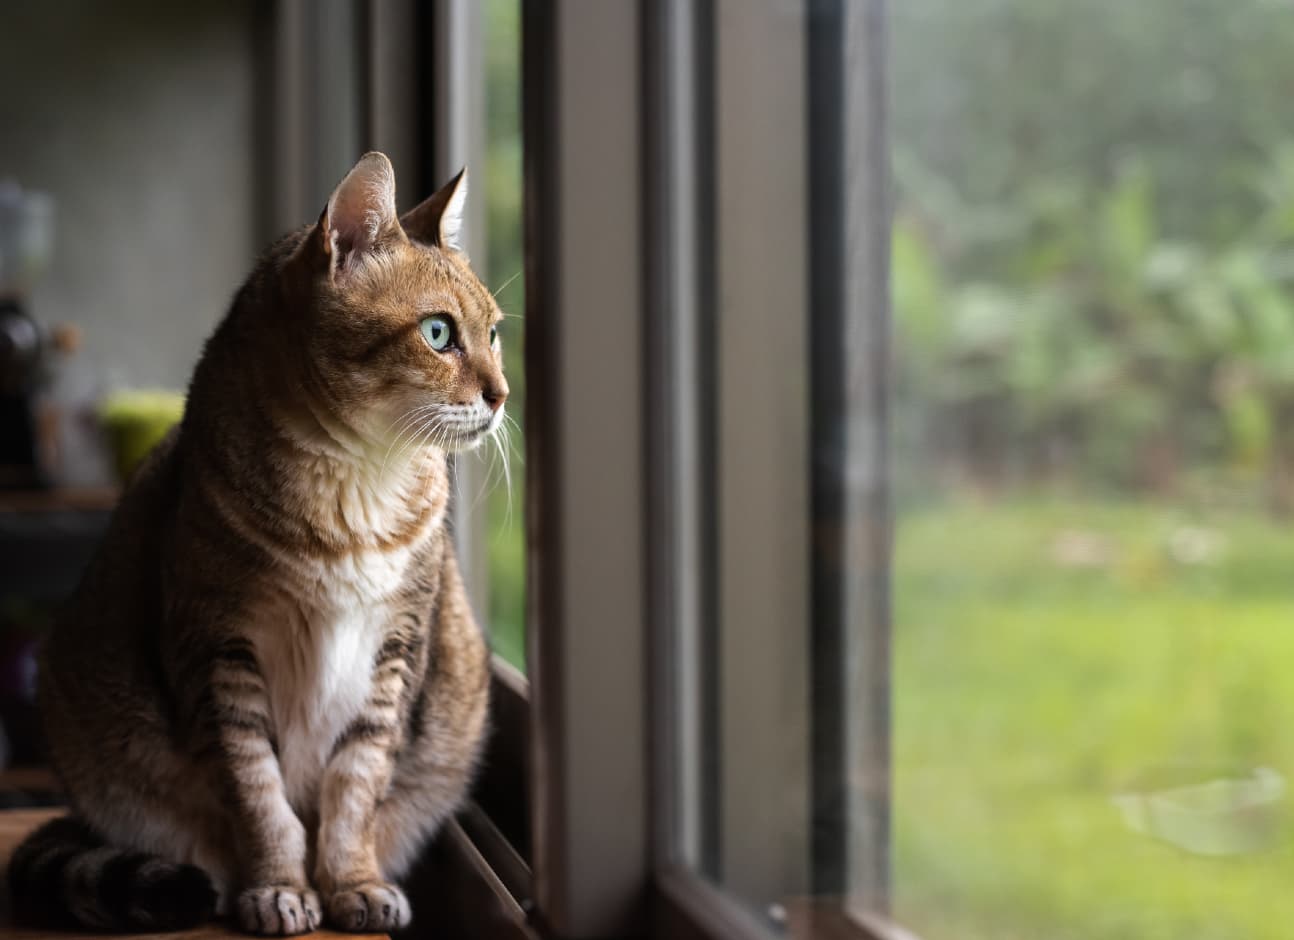 Cat looks in window